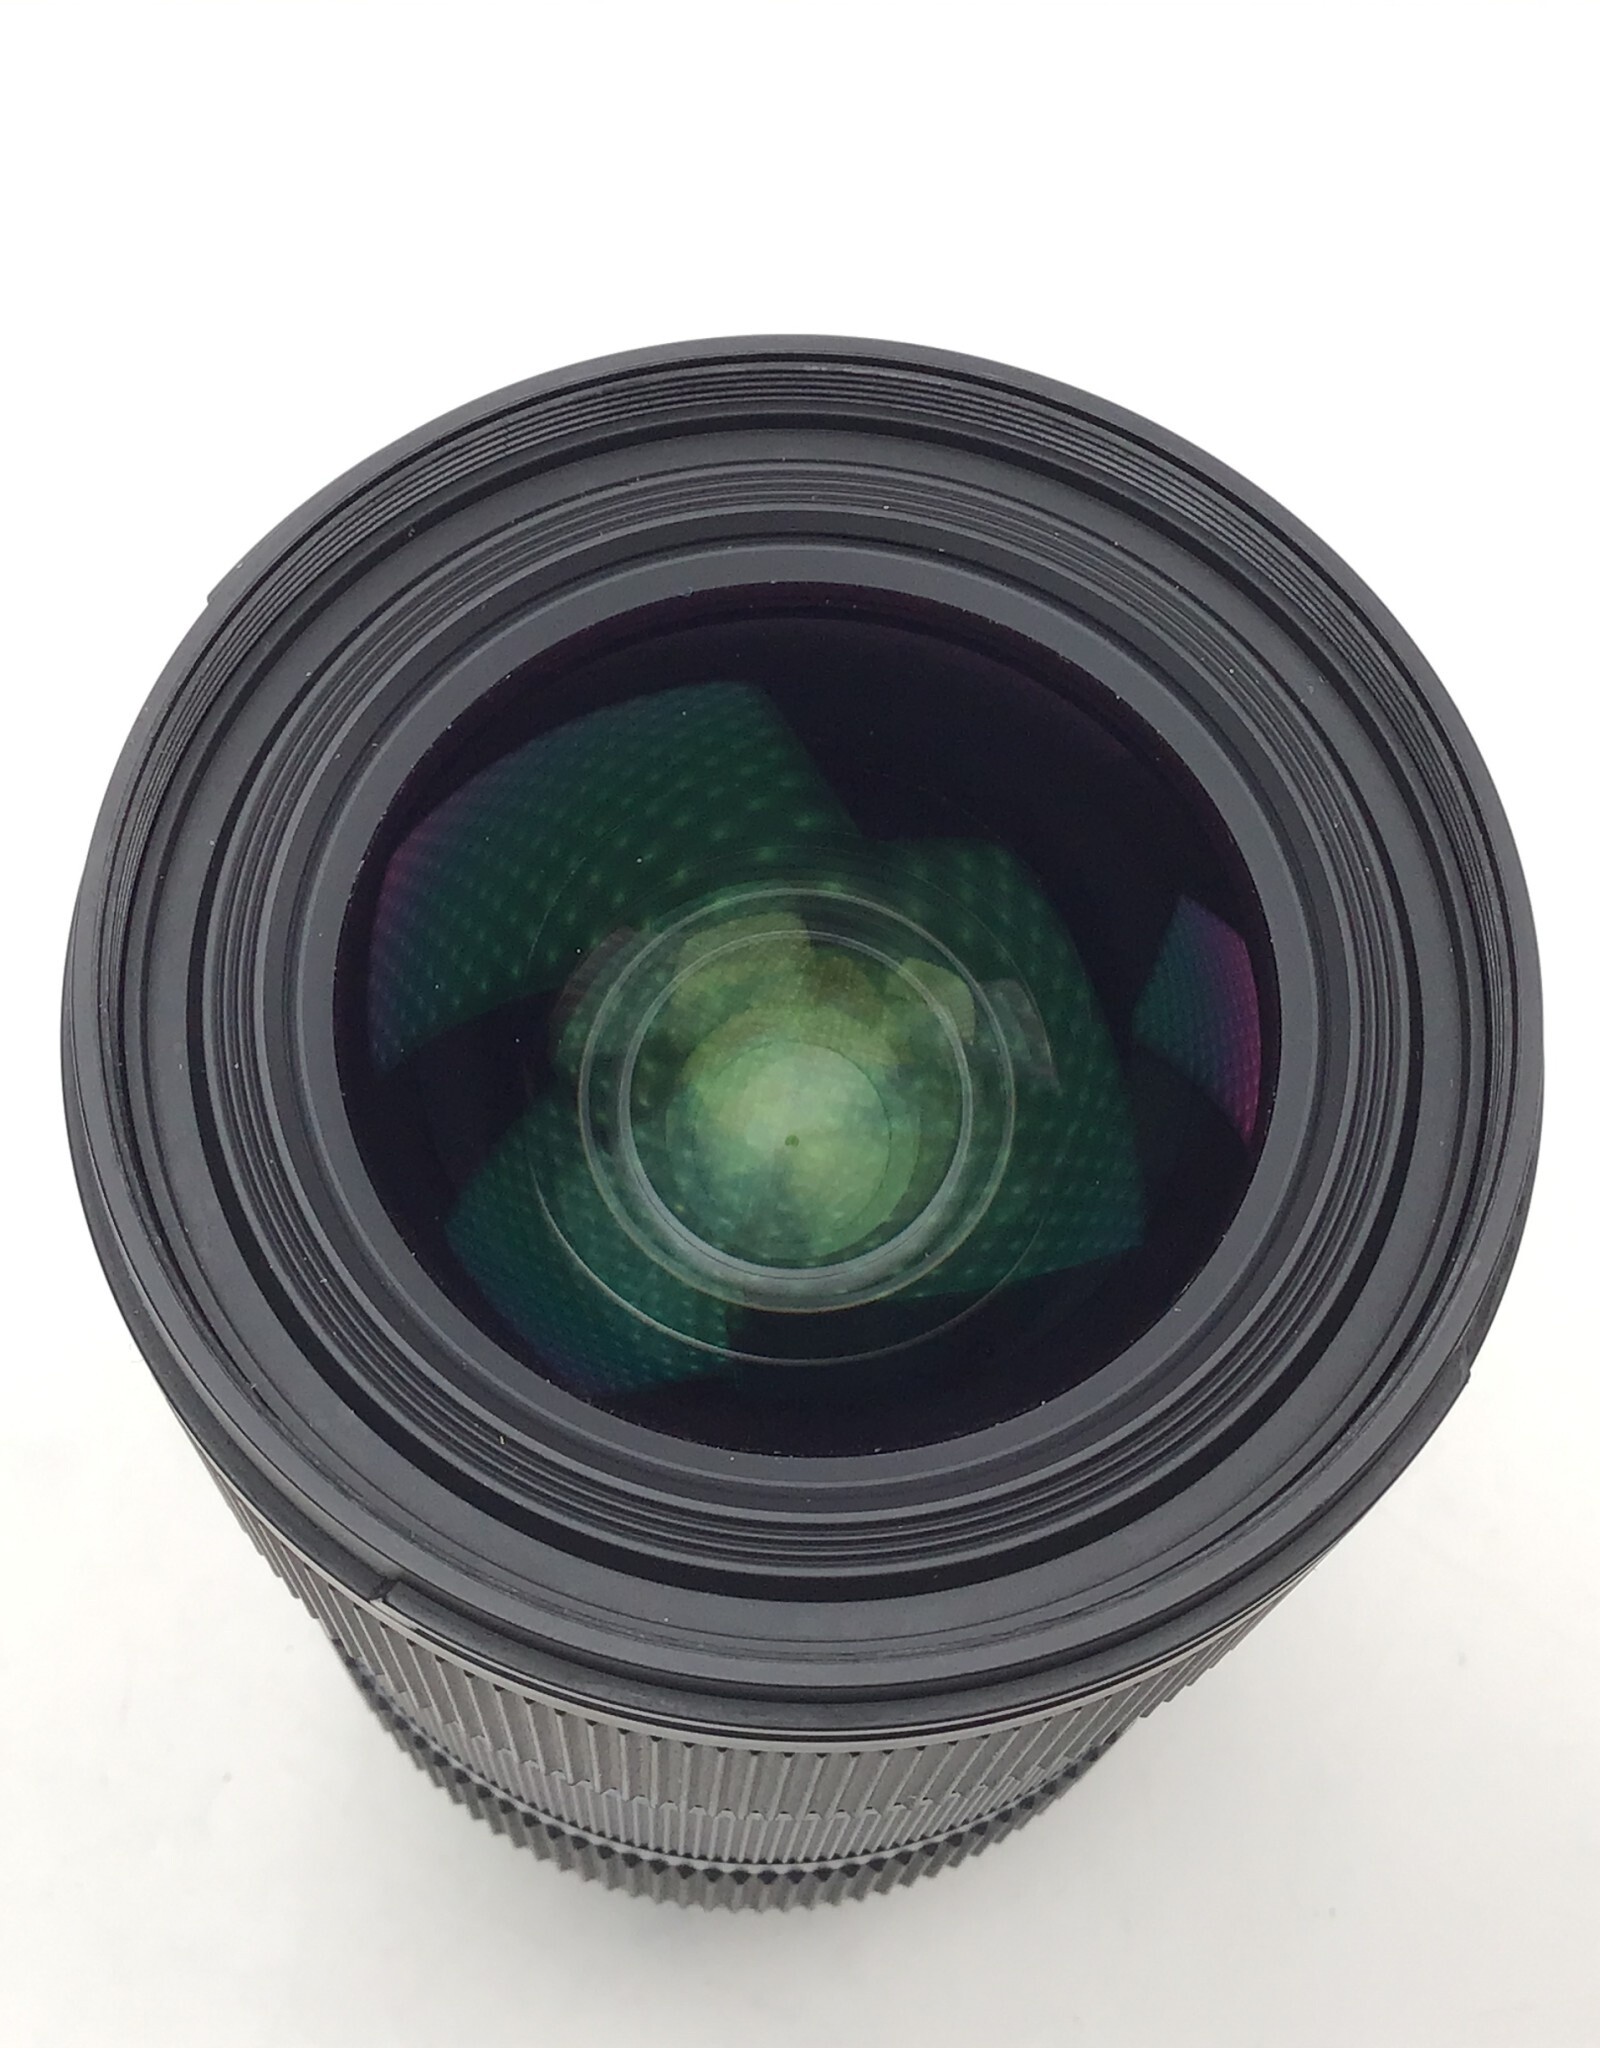 SIGMA Sigma 18-35mm f1.8 DC Lens for Nikon Used Fair